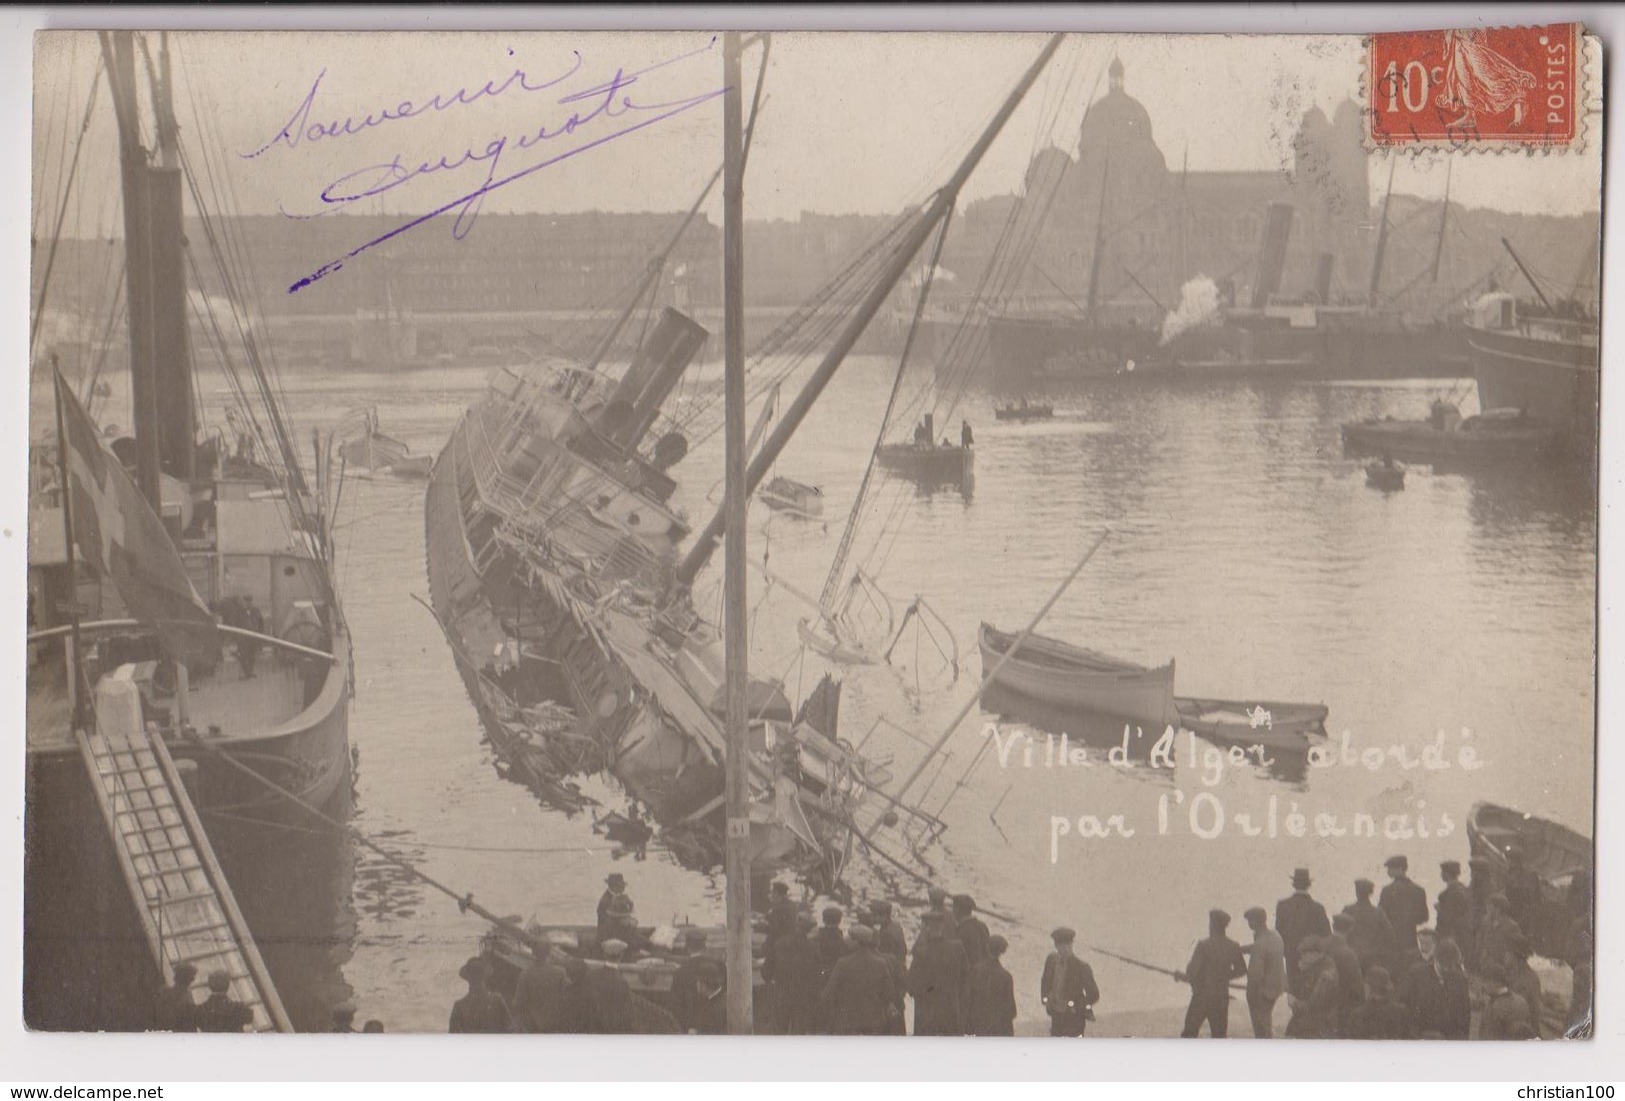 CARTE PHOTO DU PAQUEBOT COURRIER VILLE D'ALGER : COLLISION EN 1909 EN RADE DE MARSEILLE AVEC L'ORLEANAIS - 2 SCANS - - Dampfer